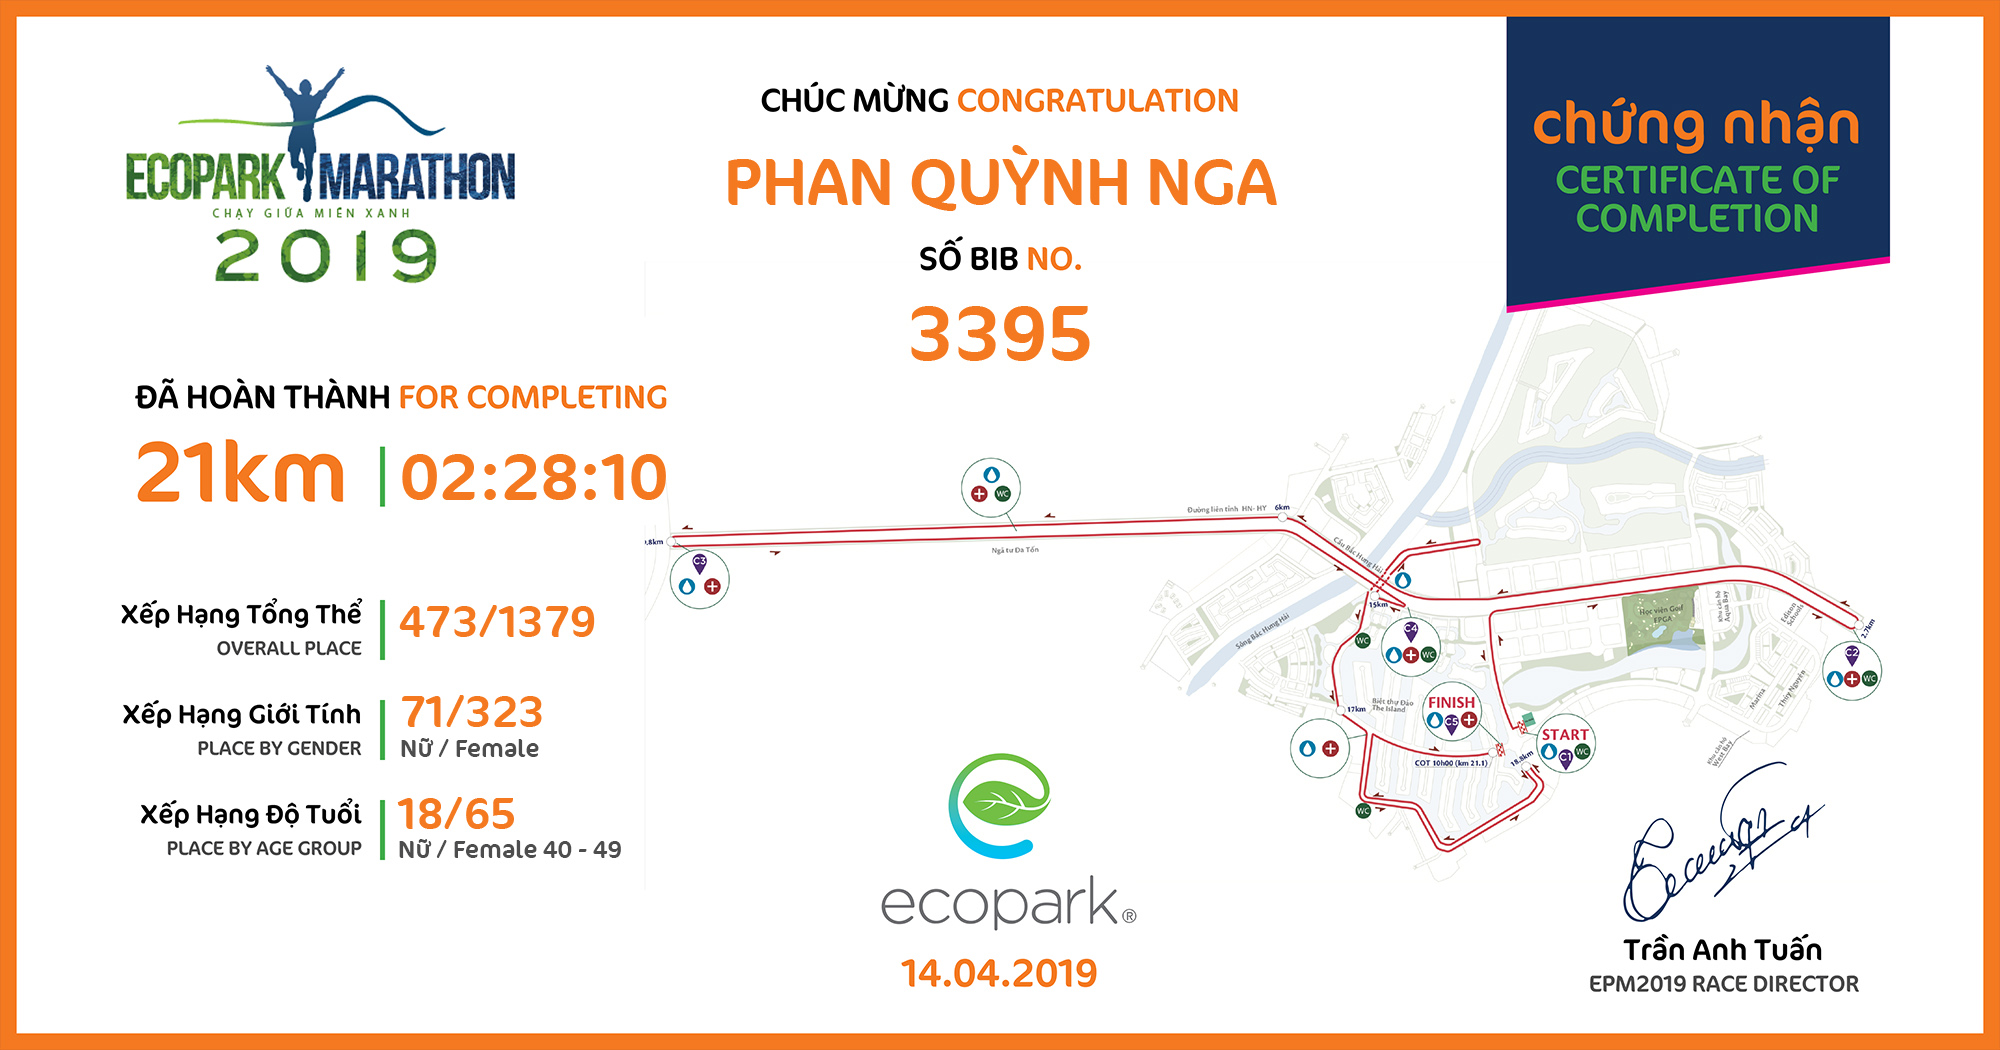 3395 - Phan Quỳnh Nga